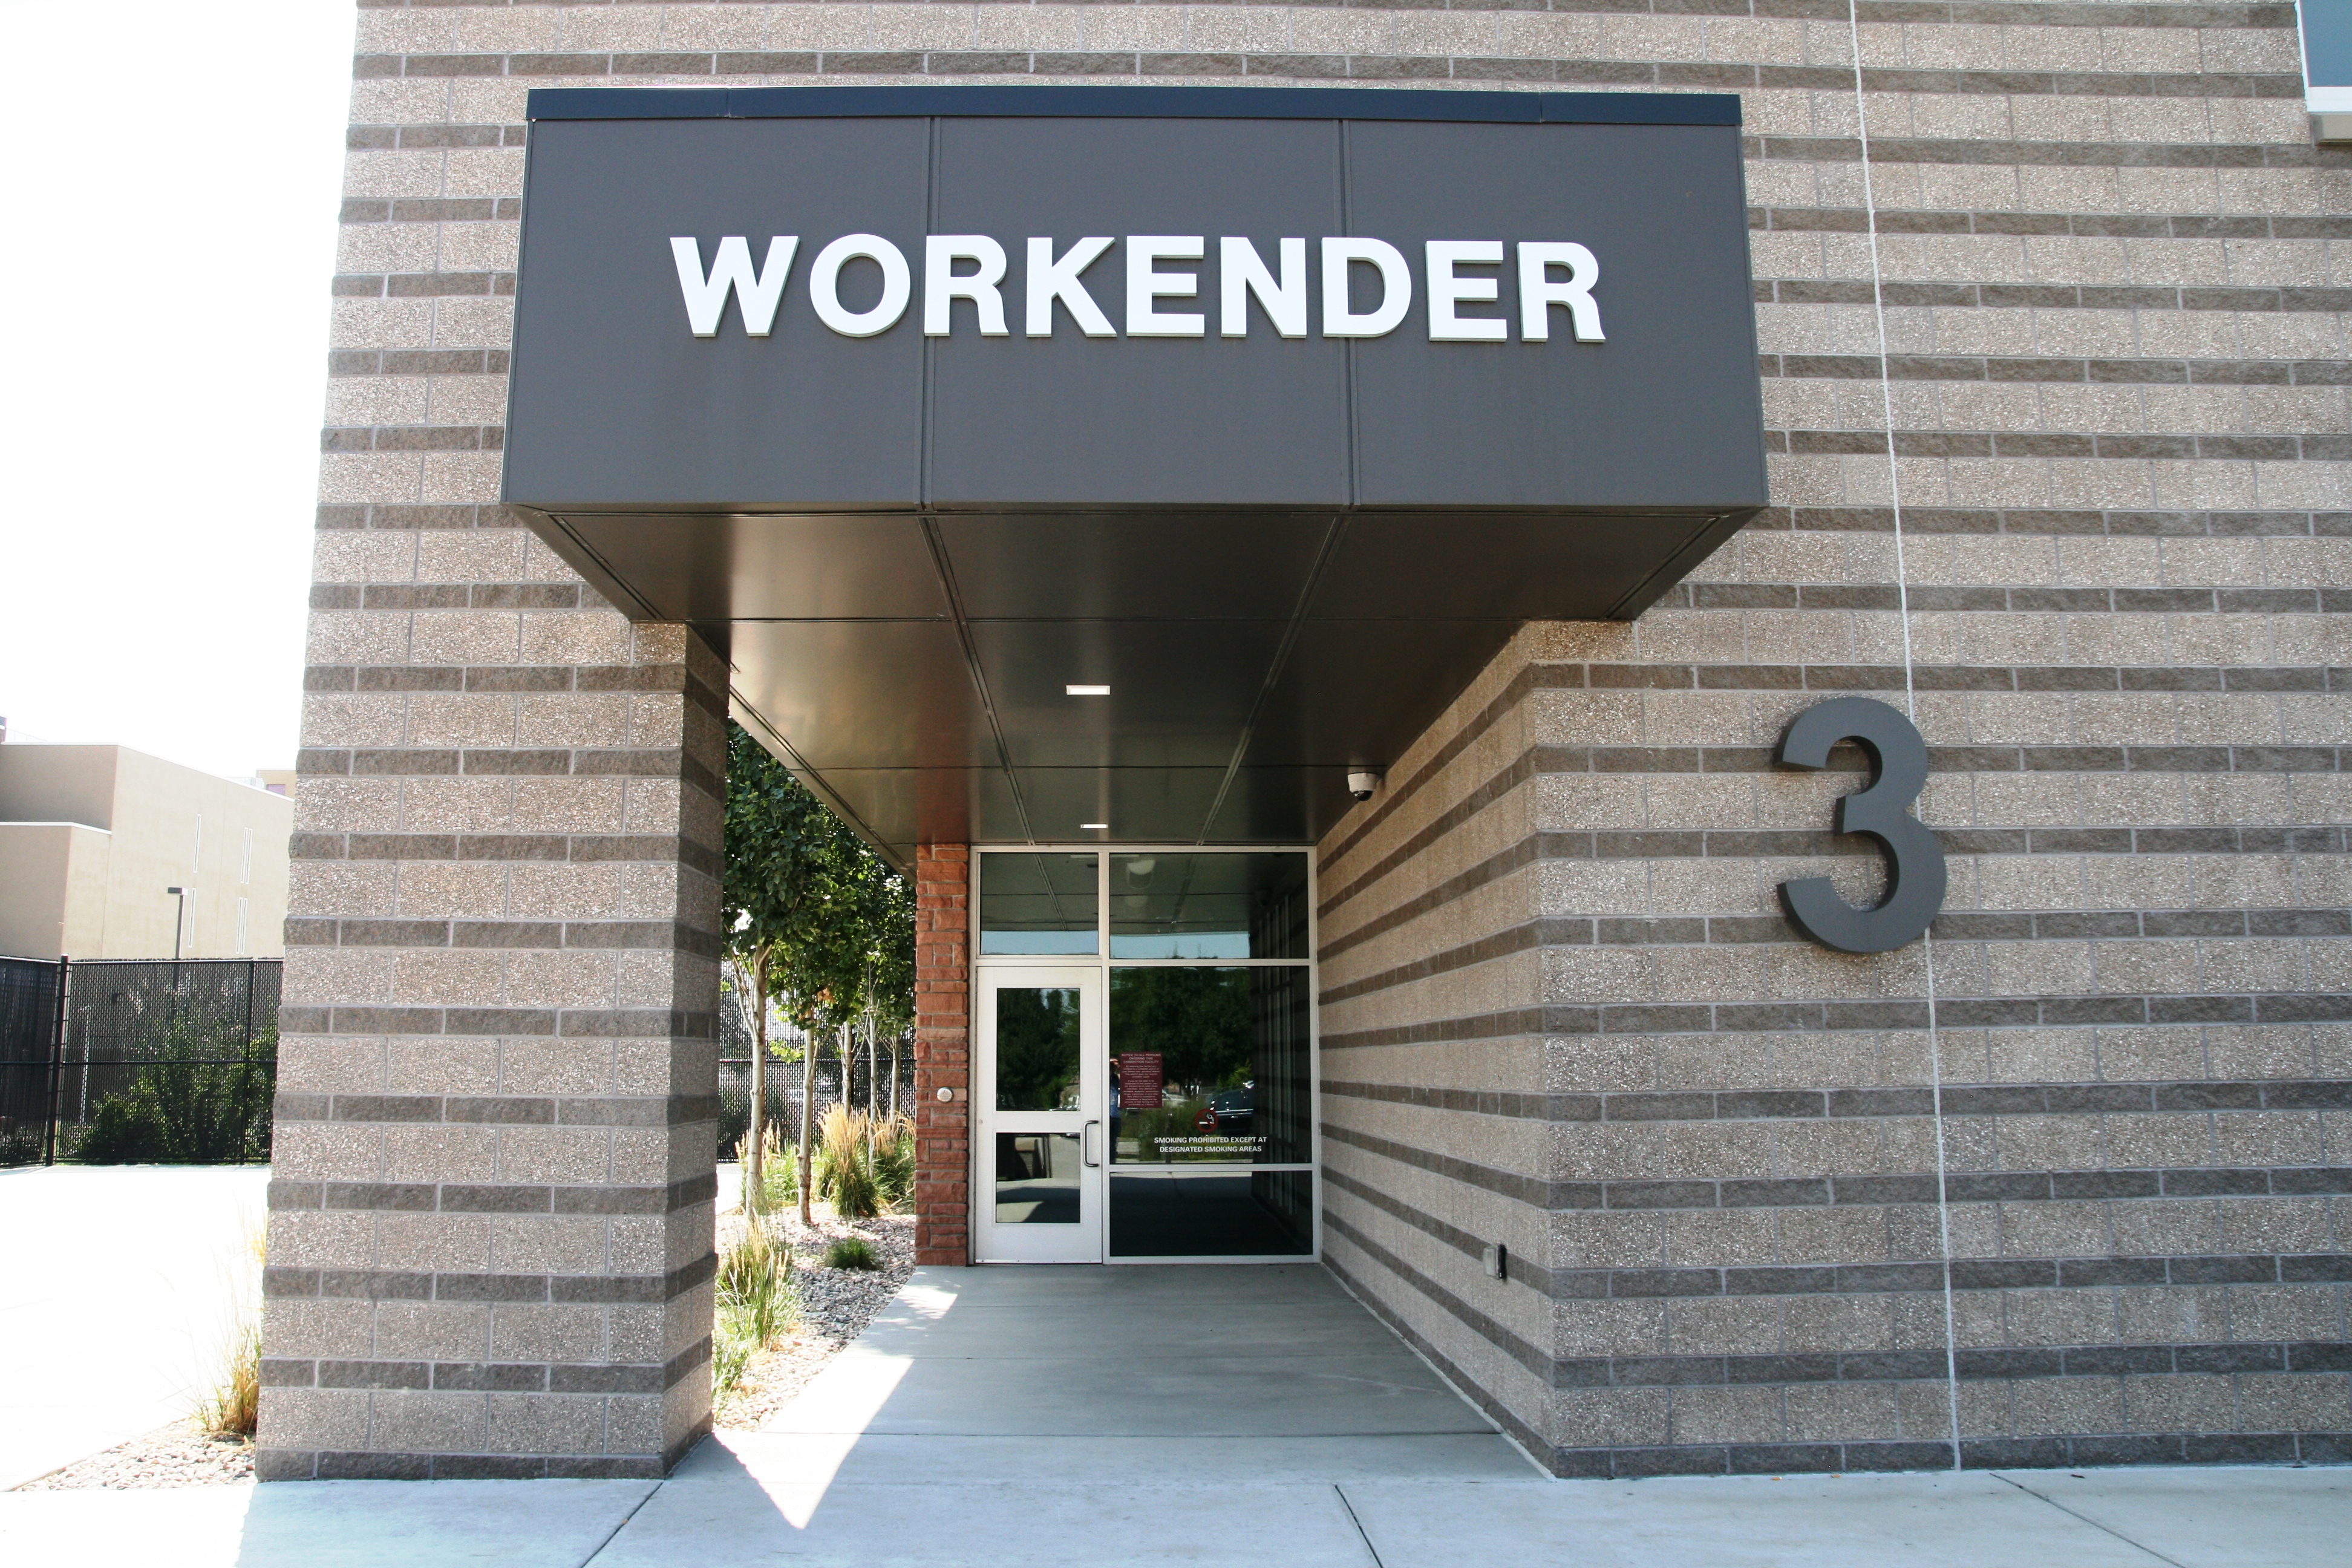 Image 1: Workender/Midweek Entrance